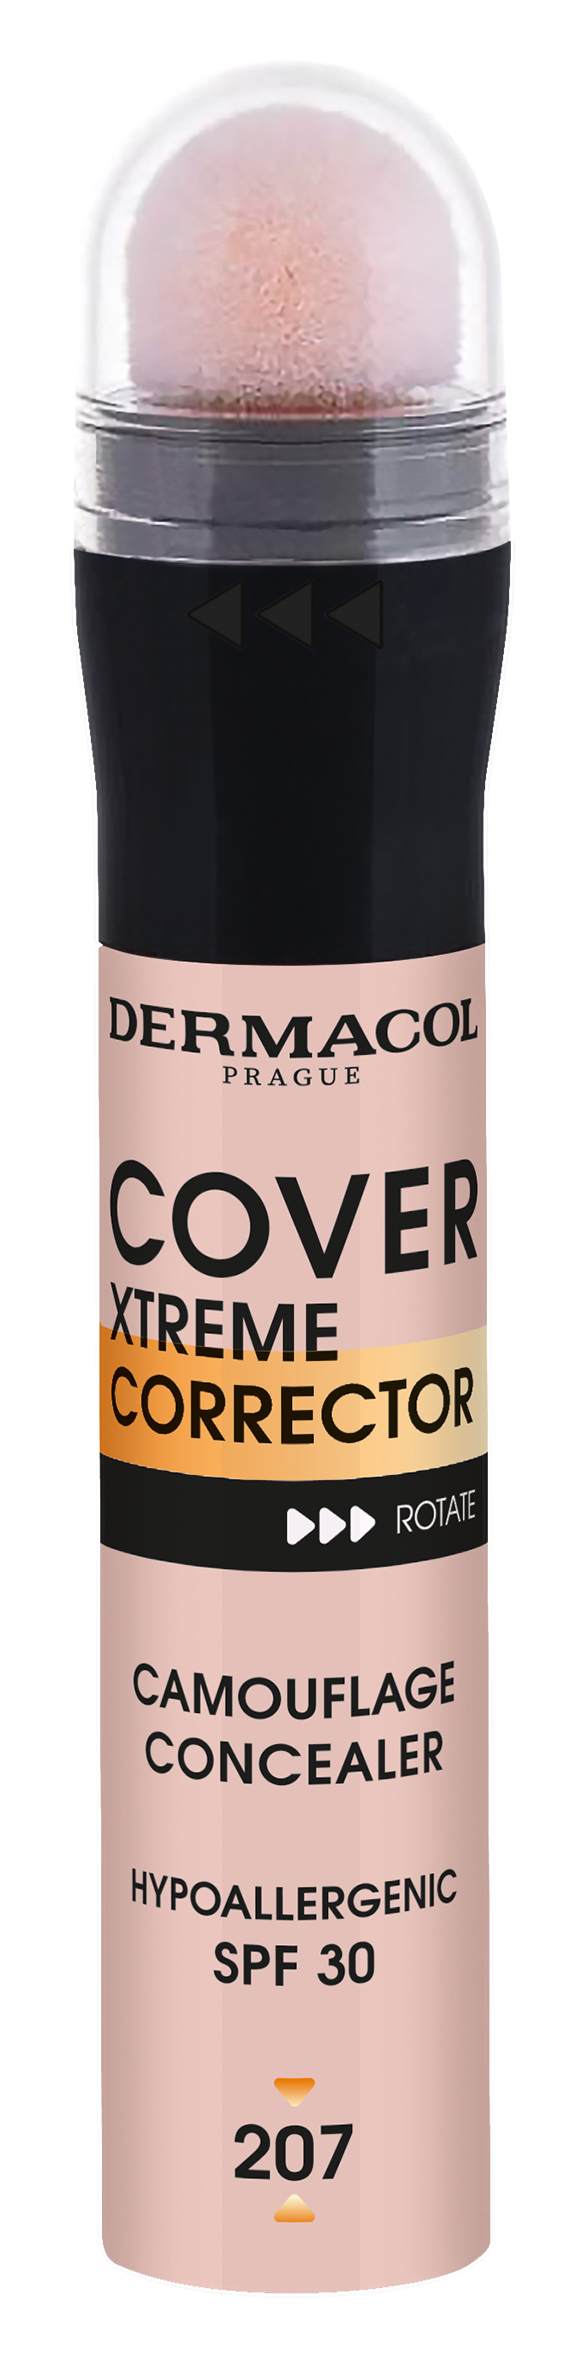 Dermacol Vysoce krycí korektor Cover Xtreme SPF 30 (Camouflage Concealer) 8 g 210